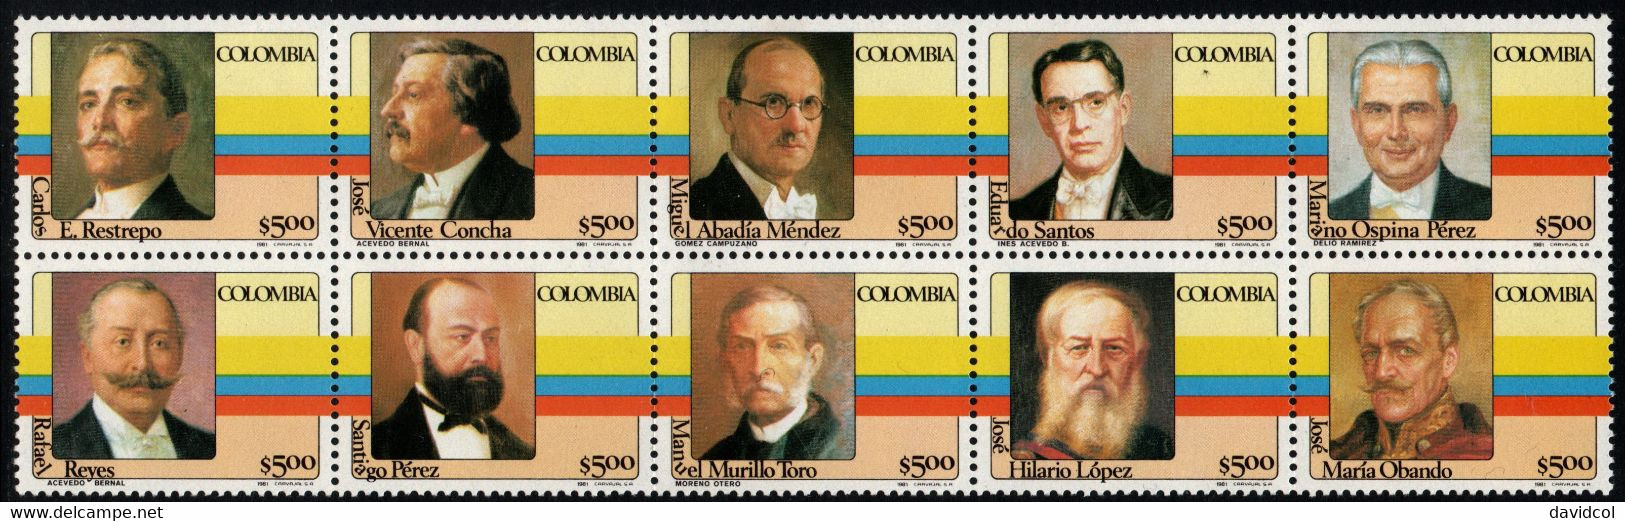 06- KOLUMBIEN - 1981- MI#:1475-1484- MNH- COLOMBIAN PRESIDENTS 1ST ISSUE - Kolumbien